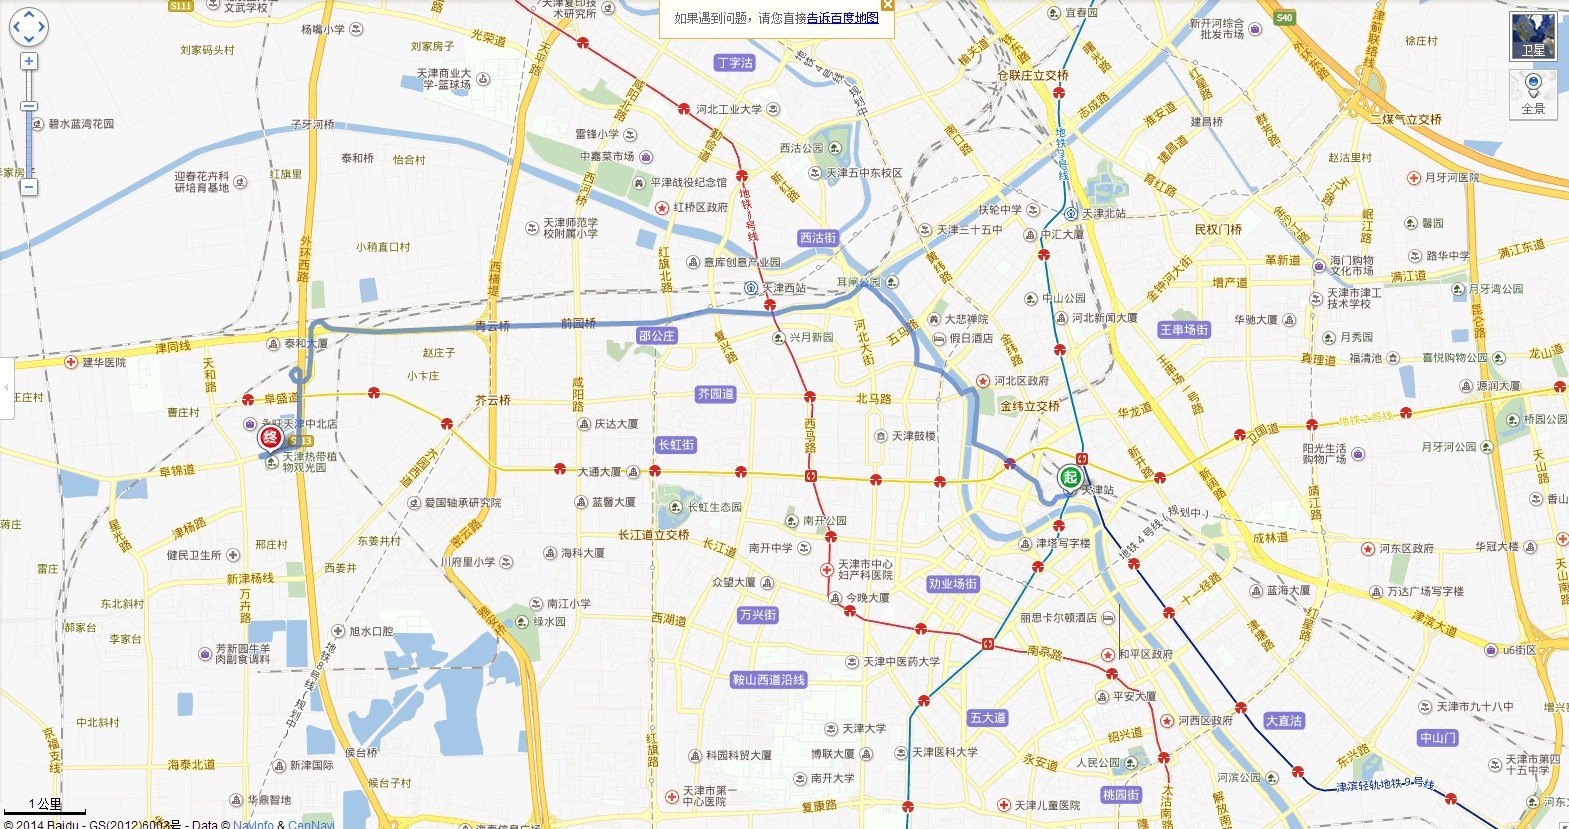 自驾的朋友可以参考地图哦,从天津站